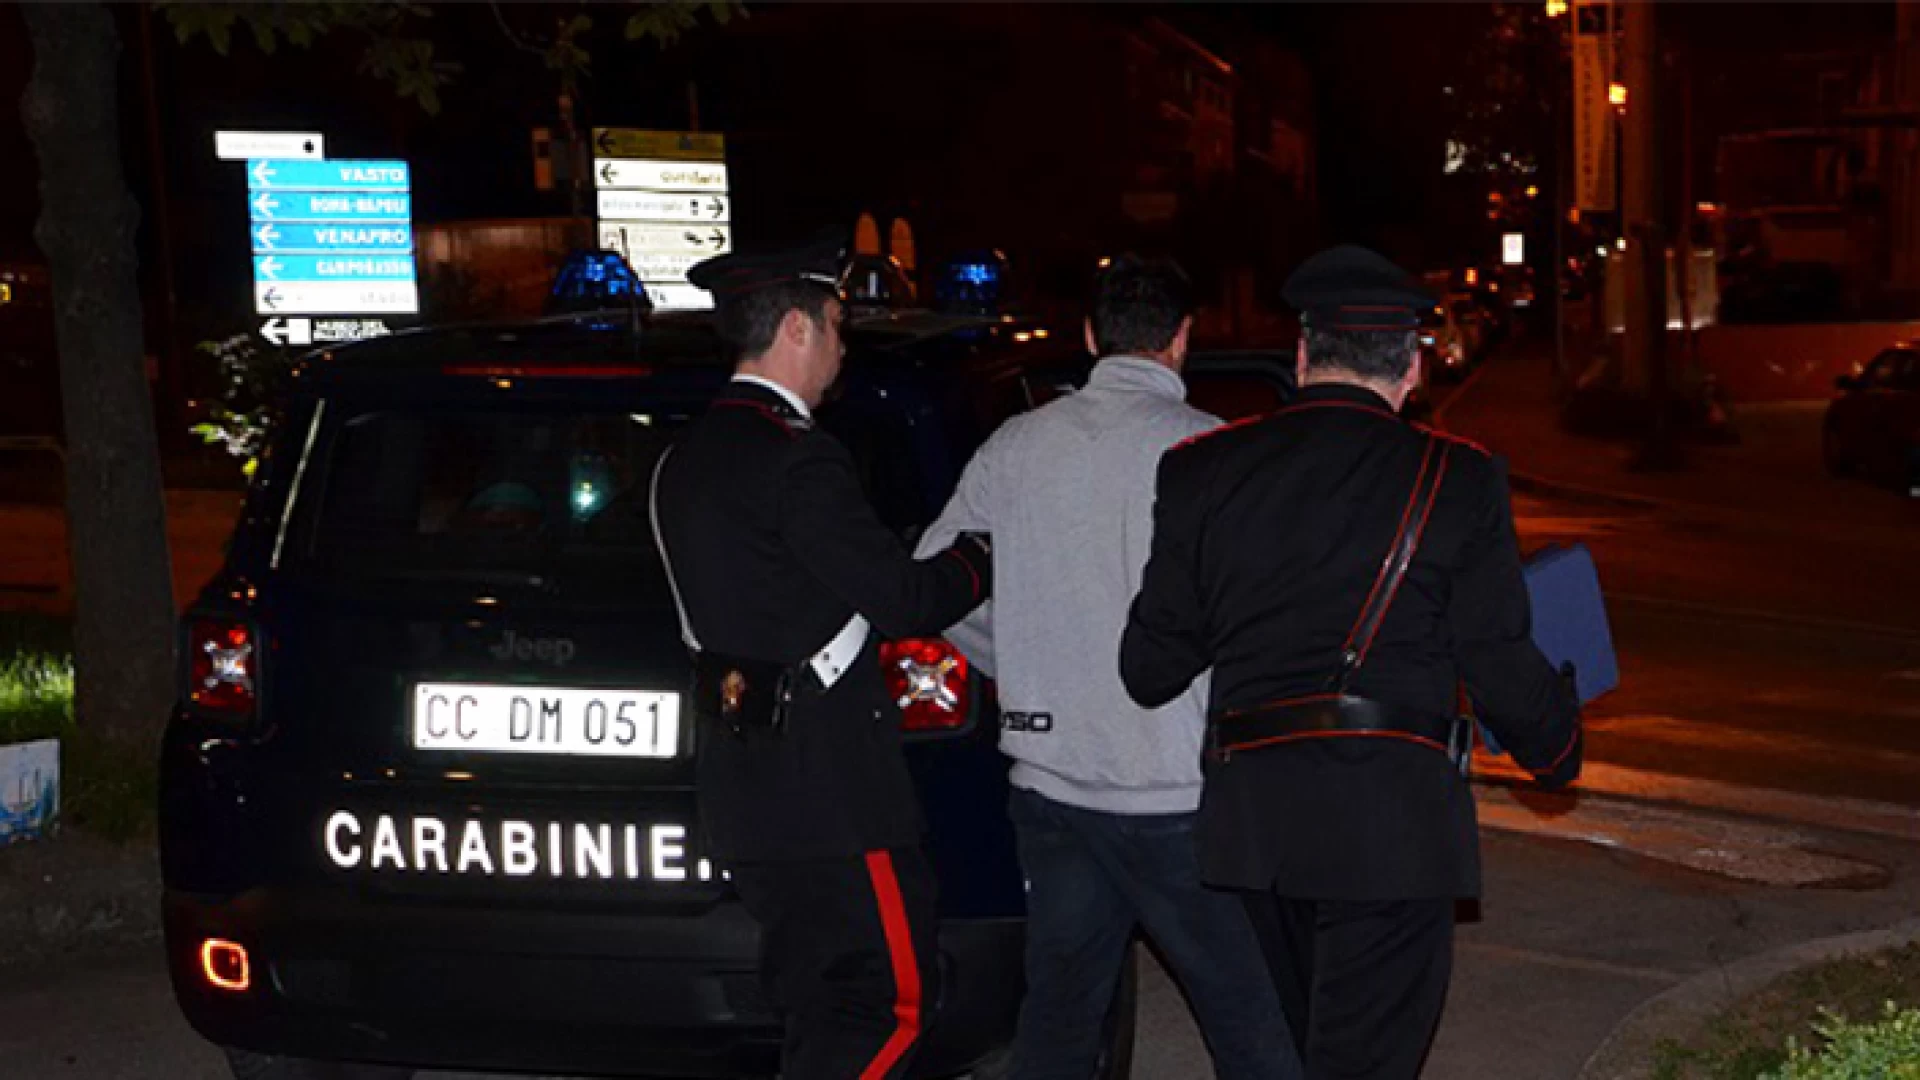 Isernia: Lite furibonda per motivi passionali, intervengono i Carabinieri, due persone arrestate per resistenza a pubblico ufficiale.